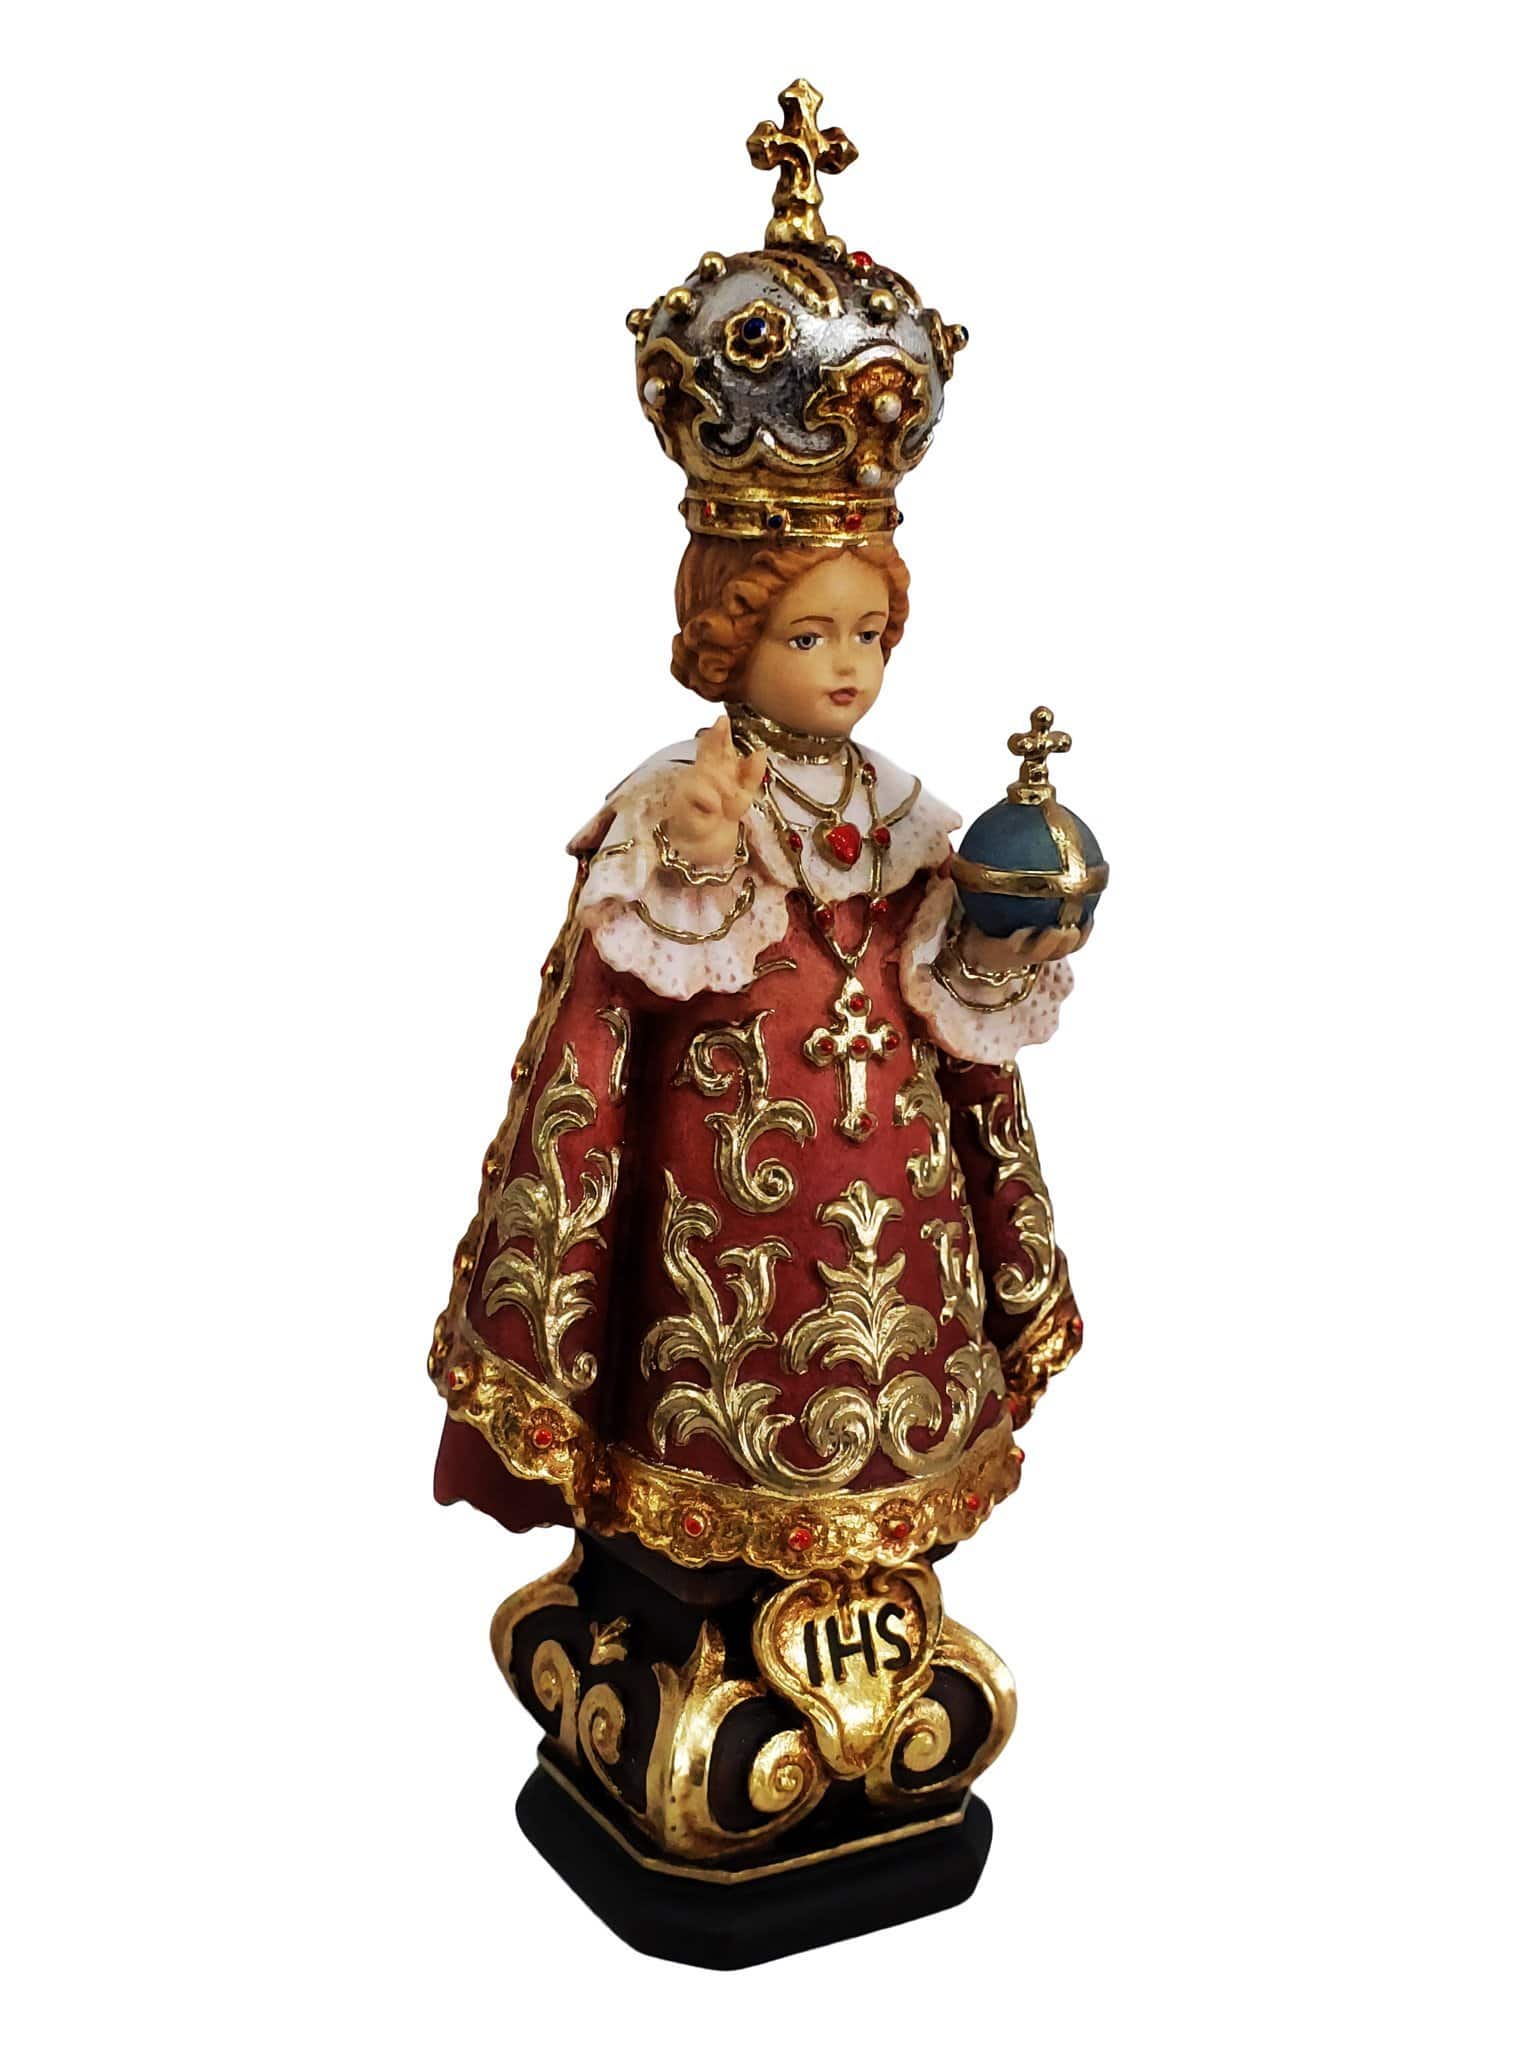 Imagem do Menino Jesus de Praga em Madeira Italiana 15 cm-TerraCotta Arte Sacra